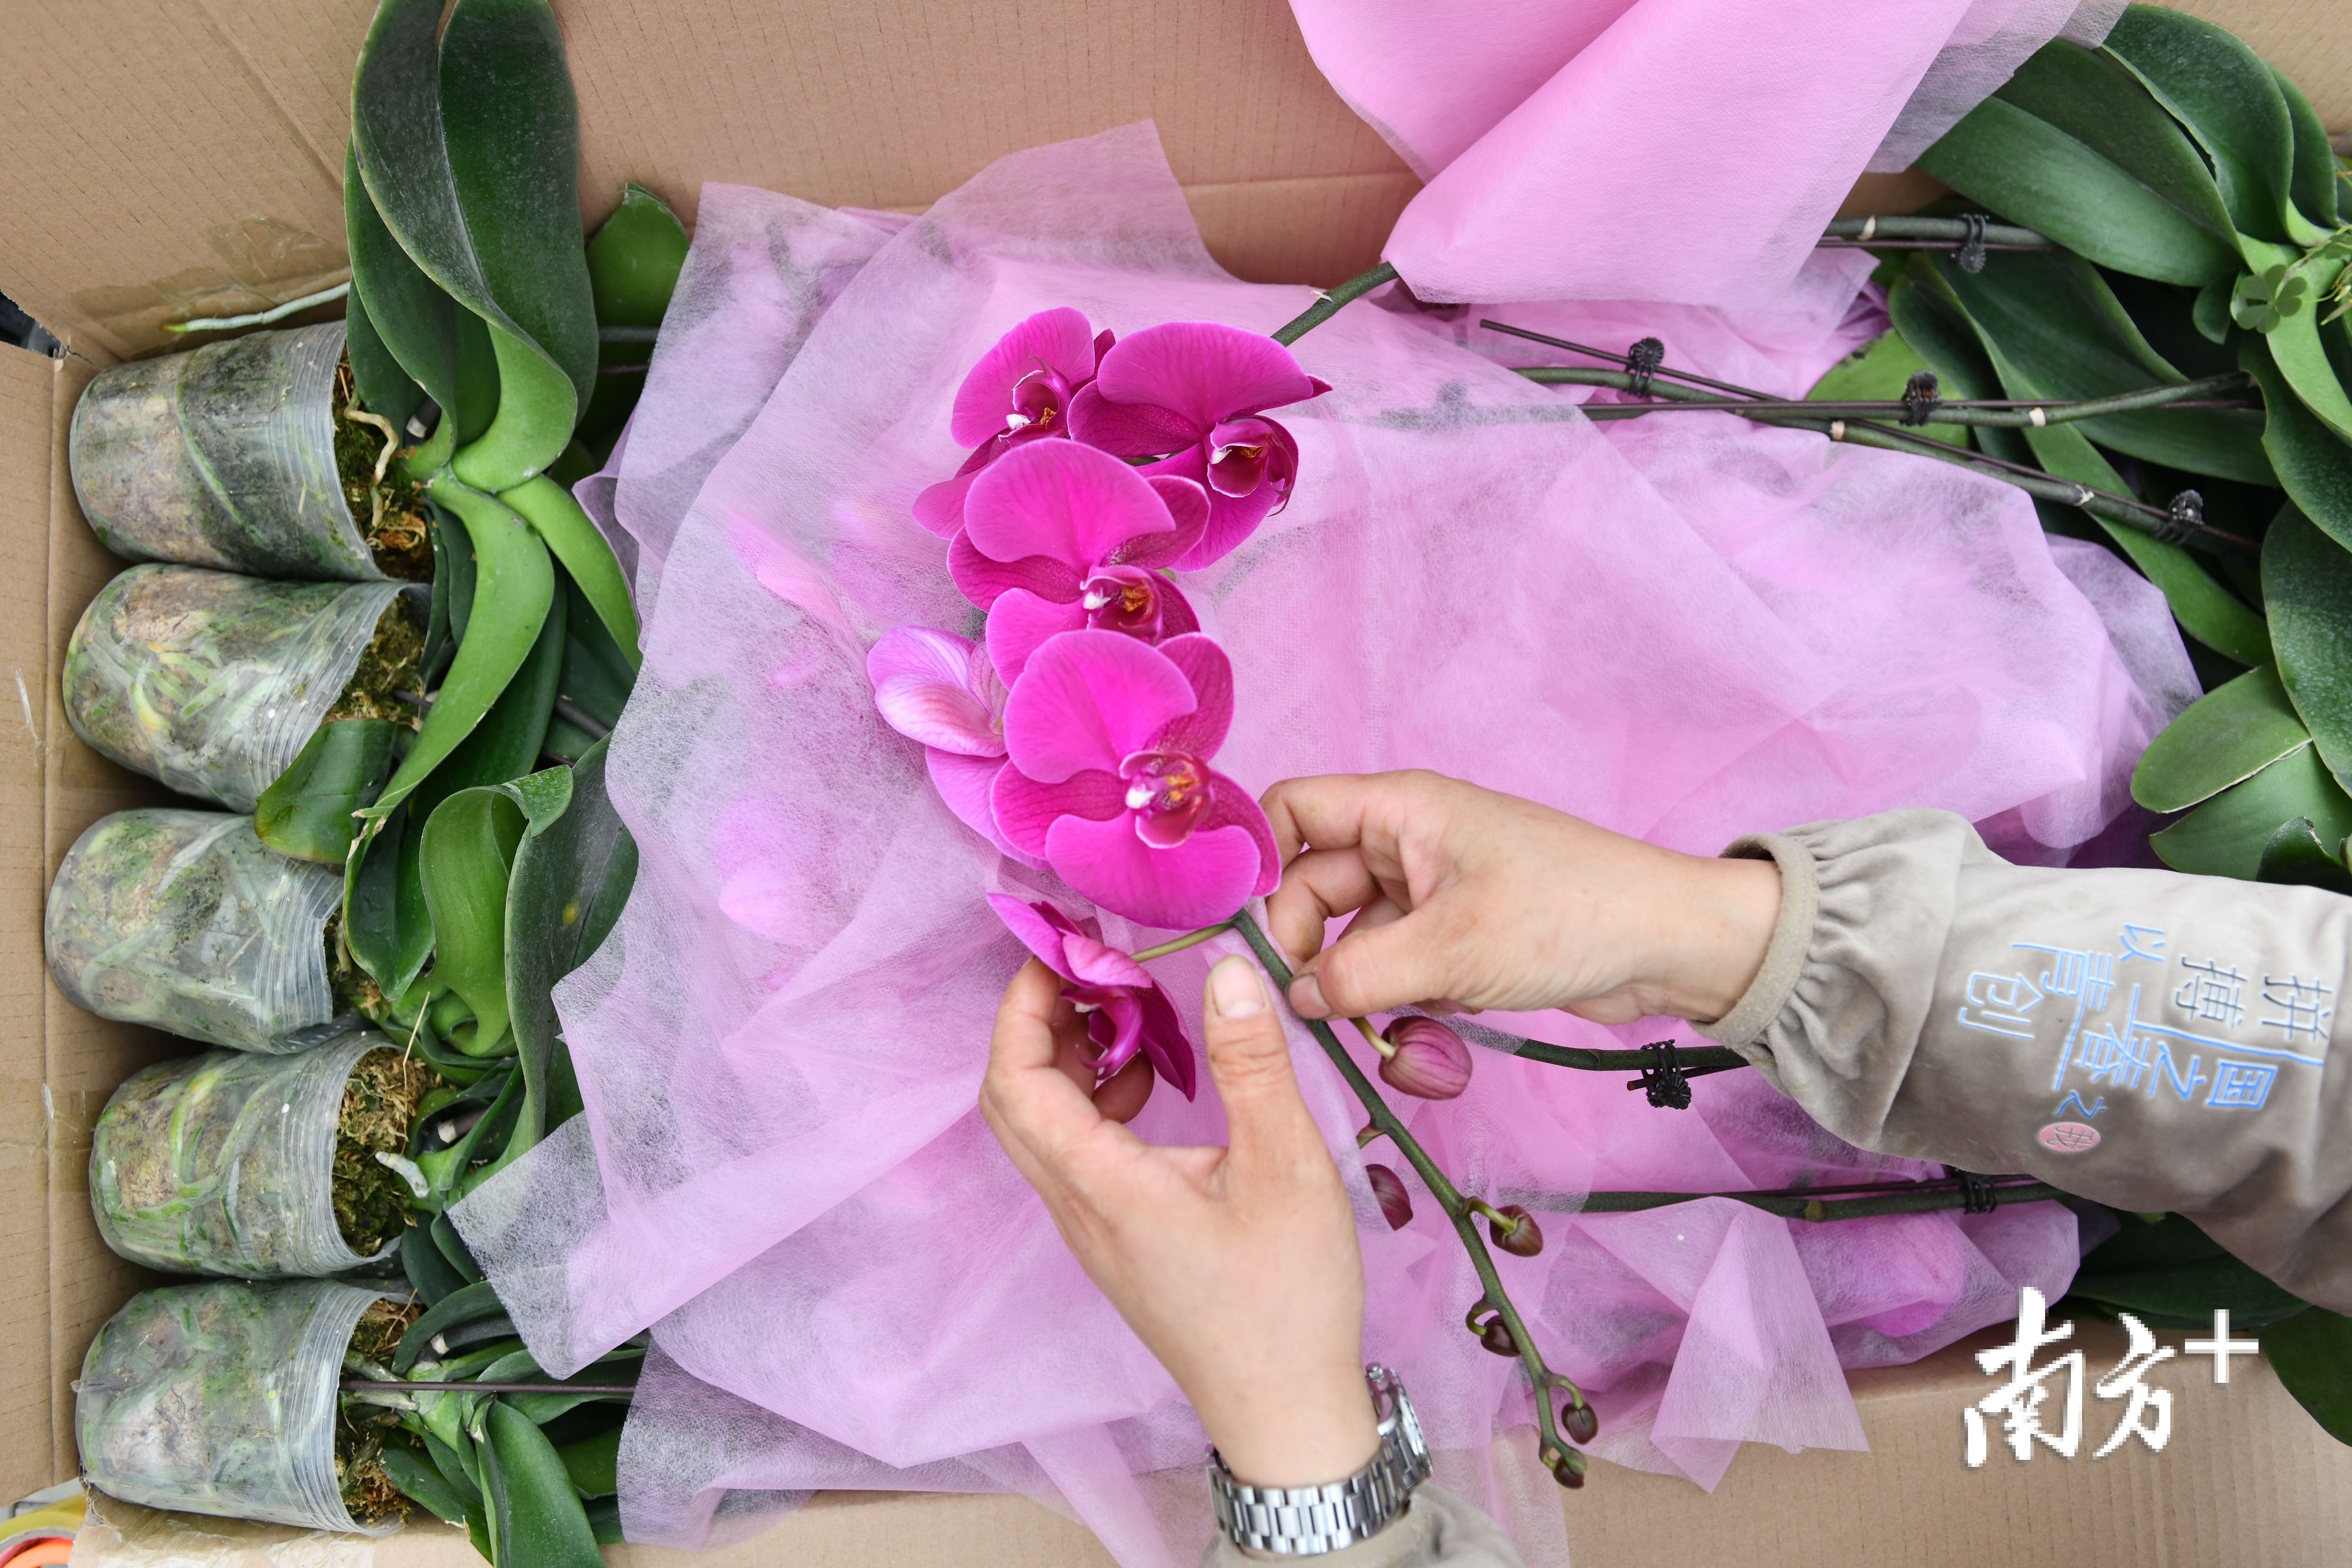 由于蝴蝶兰的花朵十分娇嫩，打包装箱的蝴蝶兰都被十分细心地呵护着避免受损。